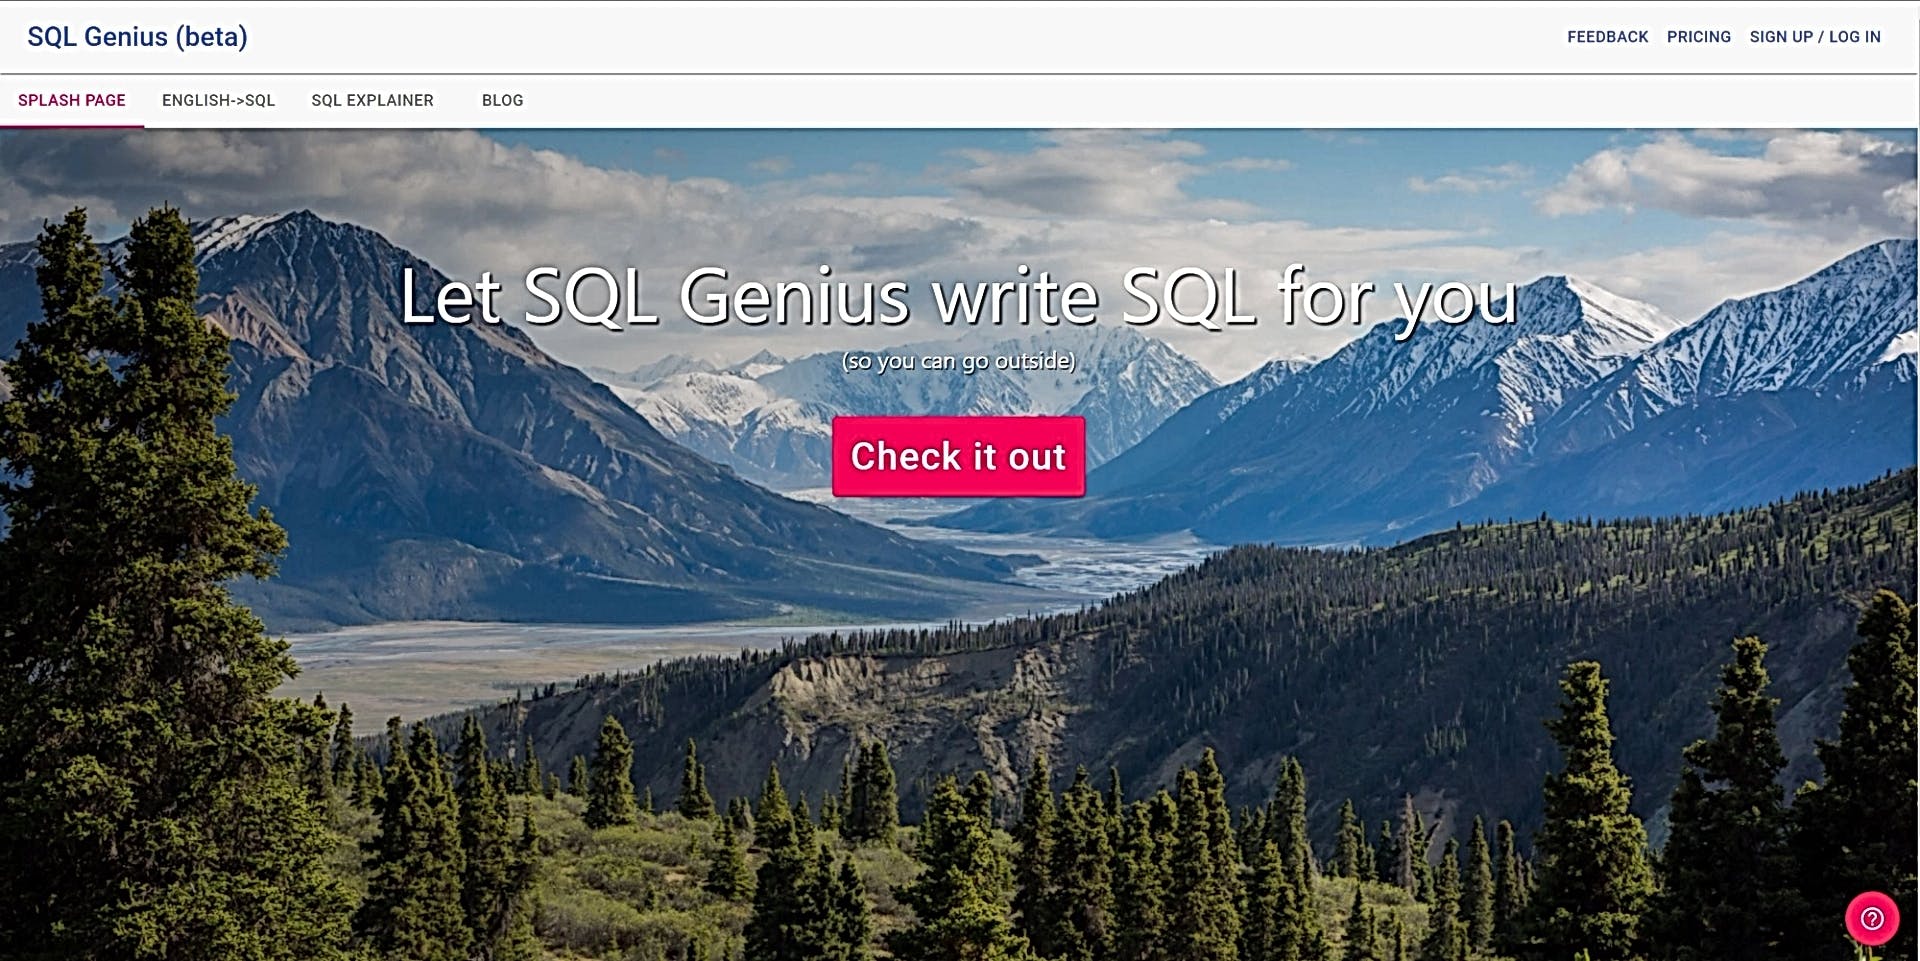 SQL Genius featured